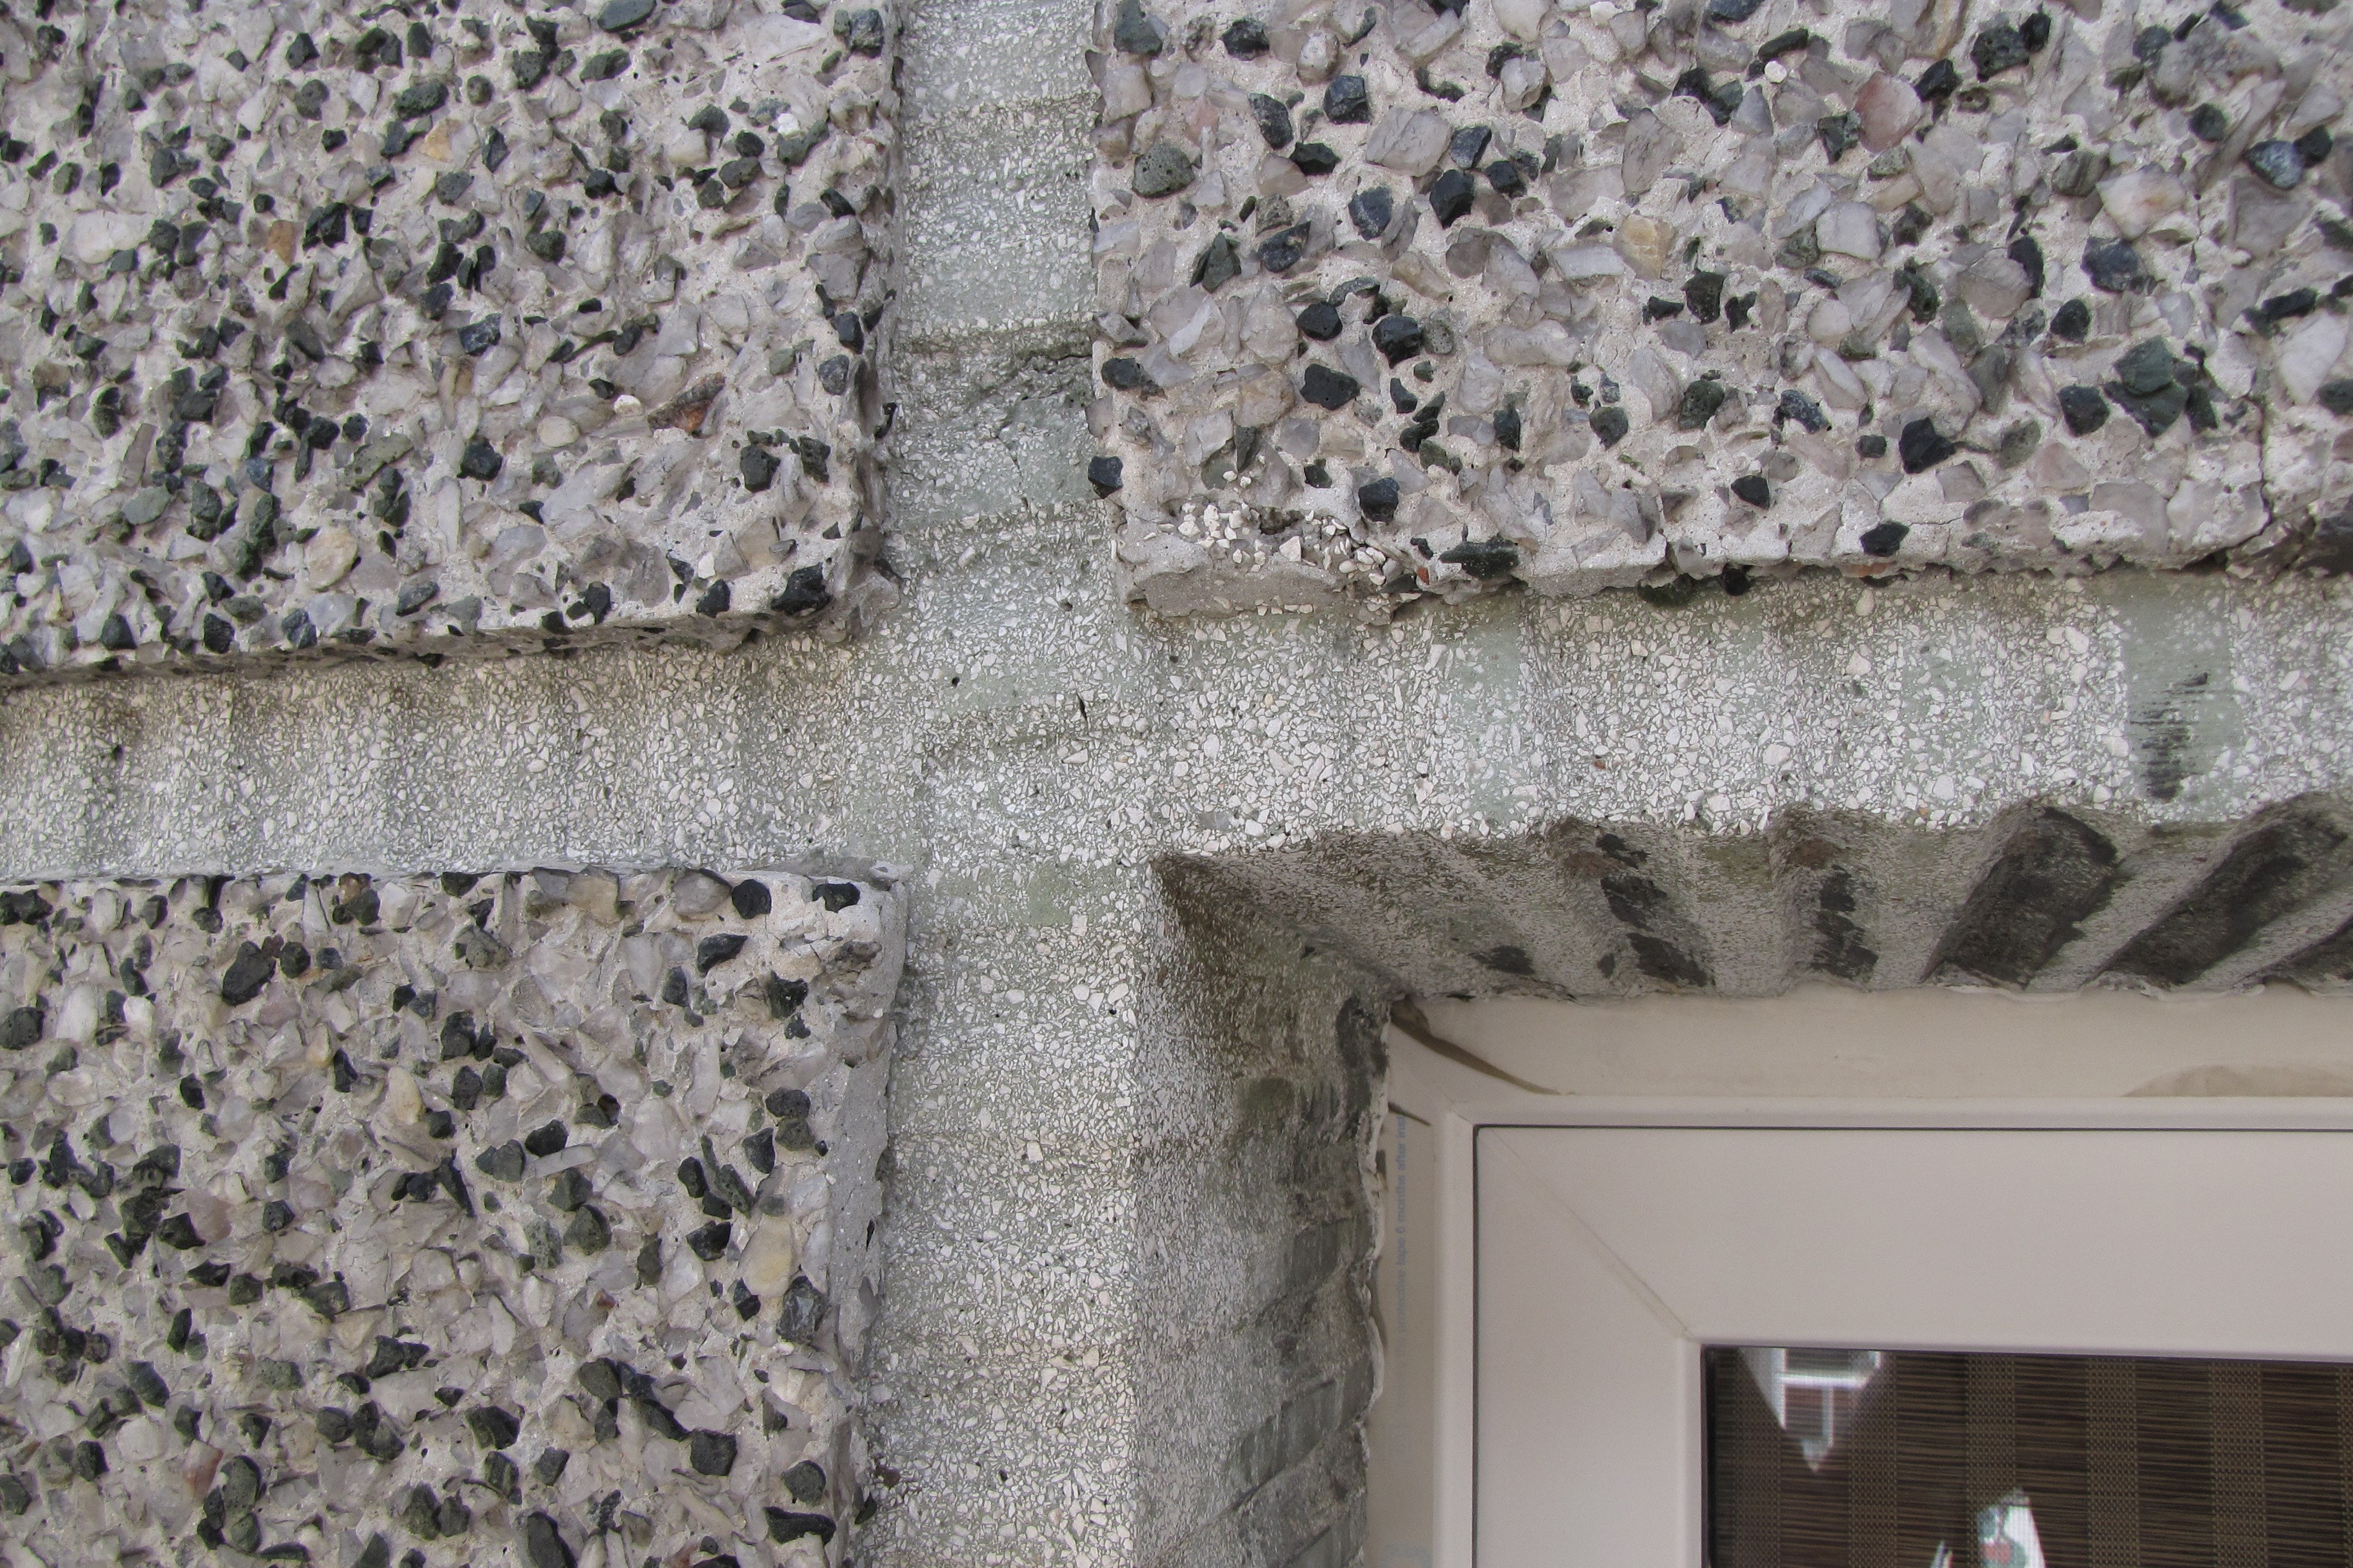 Szczegół tynku z elewacji kamienicy ul. Świętojańskiej 105, z widocznymi grubymi ziarnami, które uwydatniono wypłukując zaprawę z powierzchni